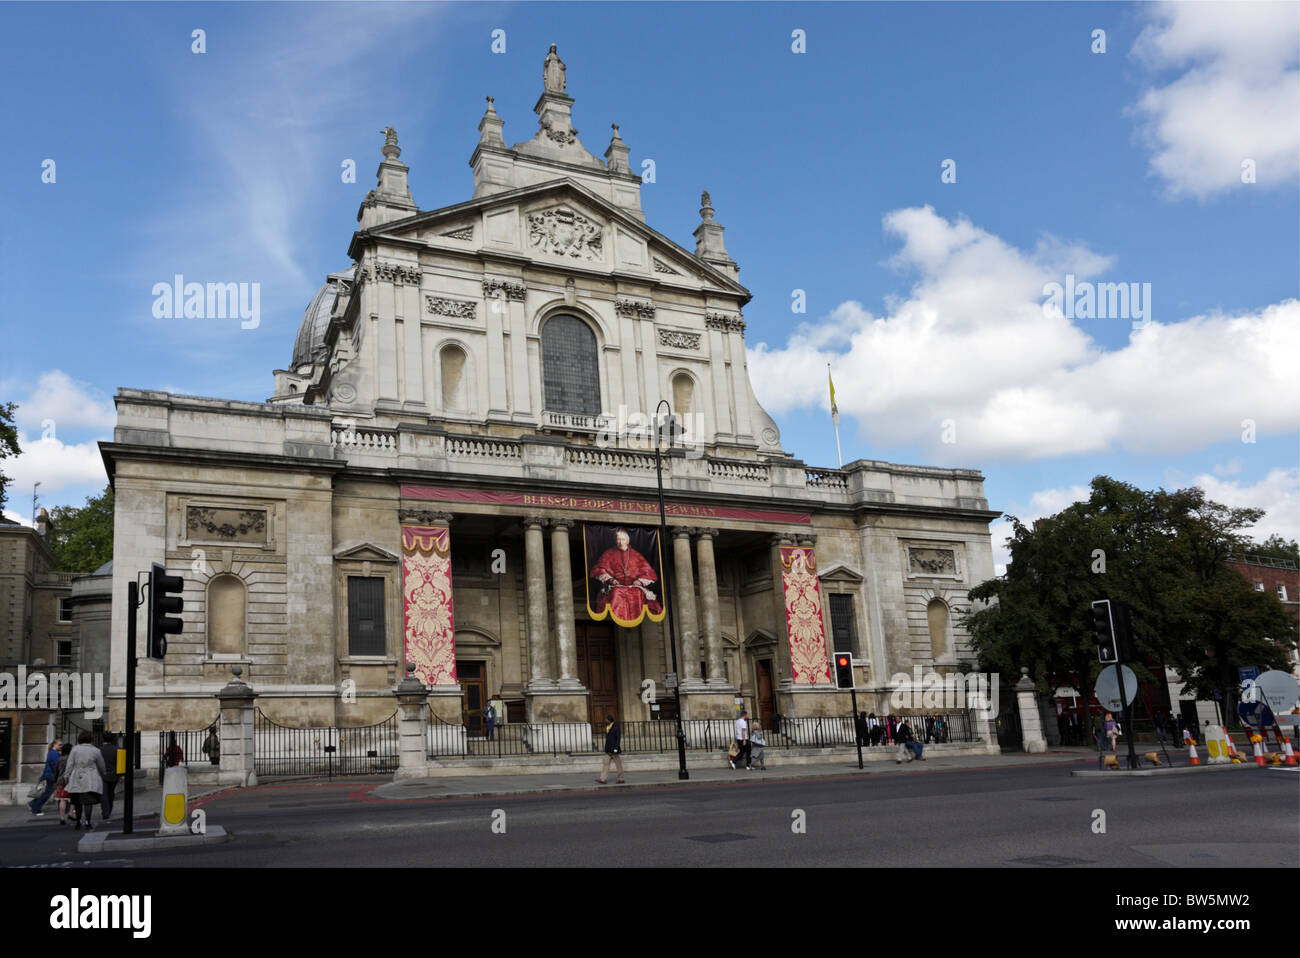 L'altitude de la frontale Brompton Oratory vu de Thurloe Place,le banner est du Cardinal Newman. Banque D'Images